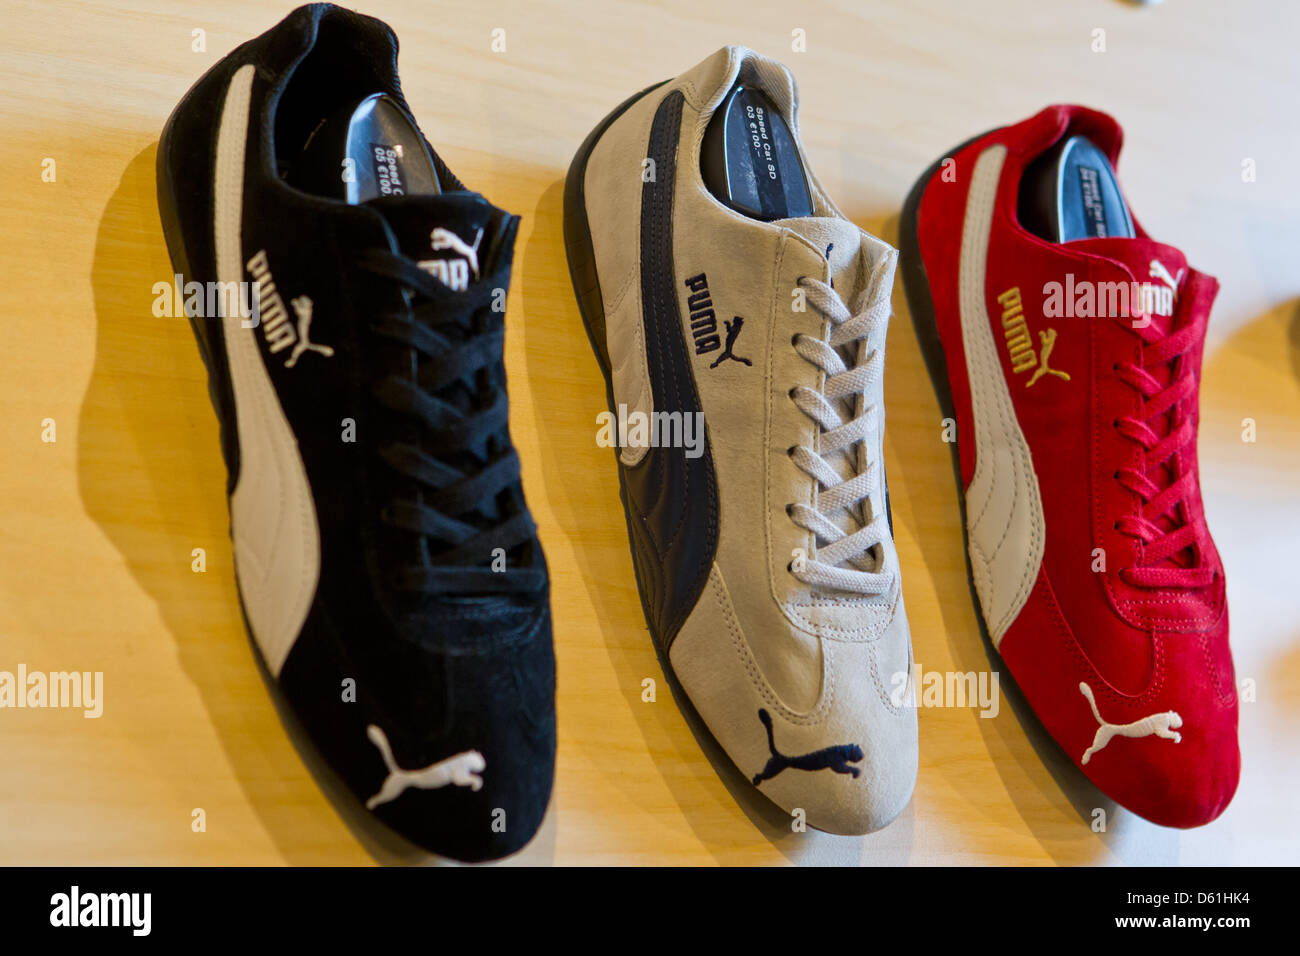 Los zapatos de los fabricantes de ropa deportiva Puma se muestran en una  tienda en Herzogenaurach, Alemania, 24 de abril de 2012. En 2011, el Puma  llegó a la marca de volumen